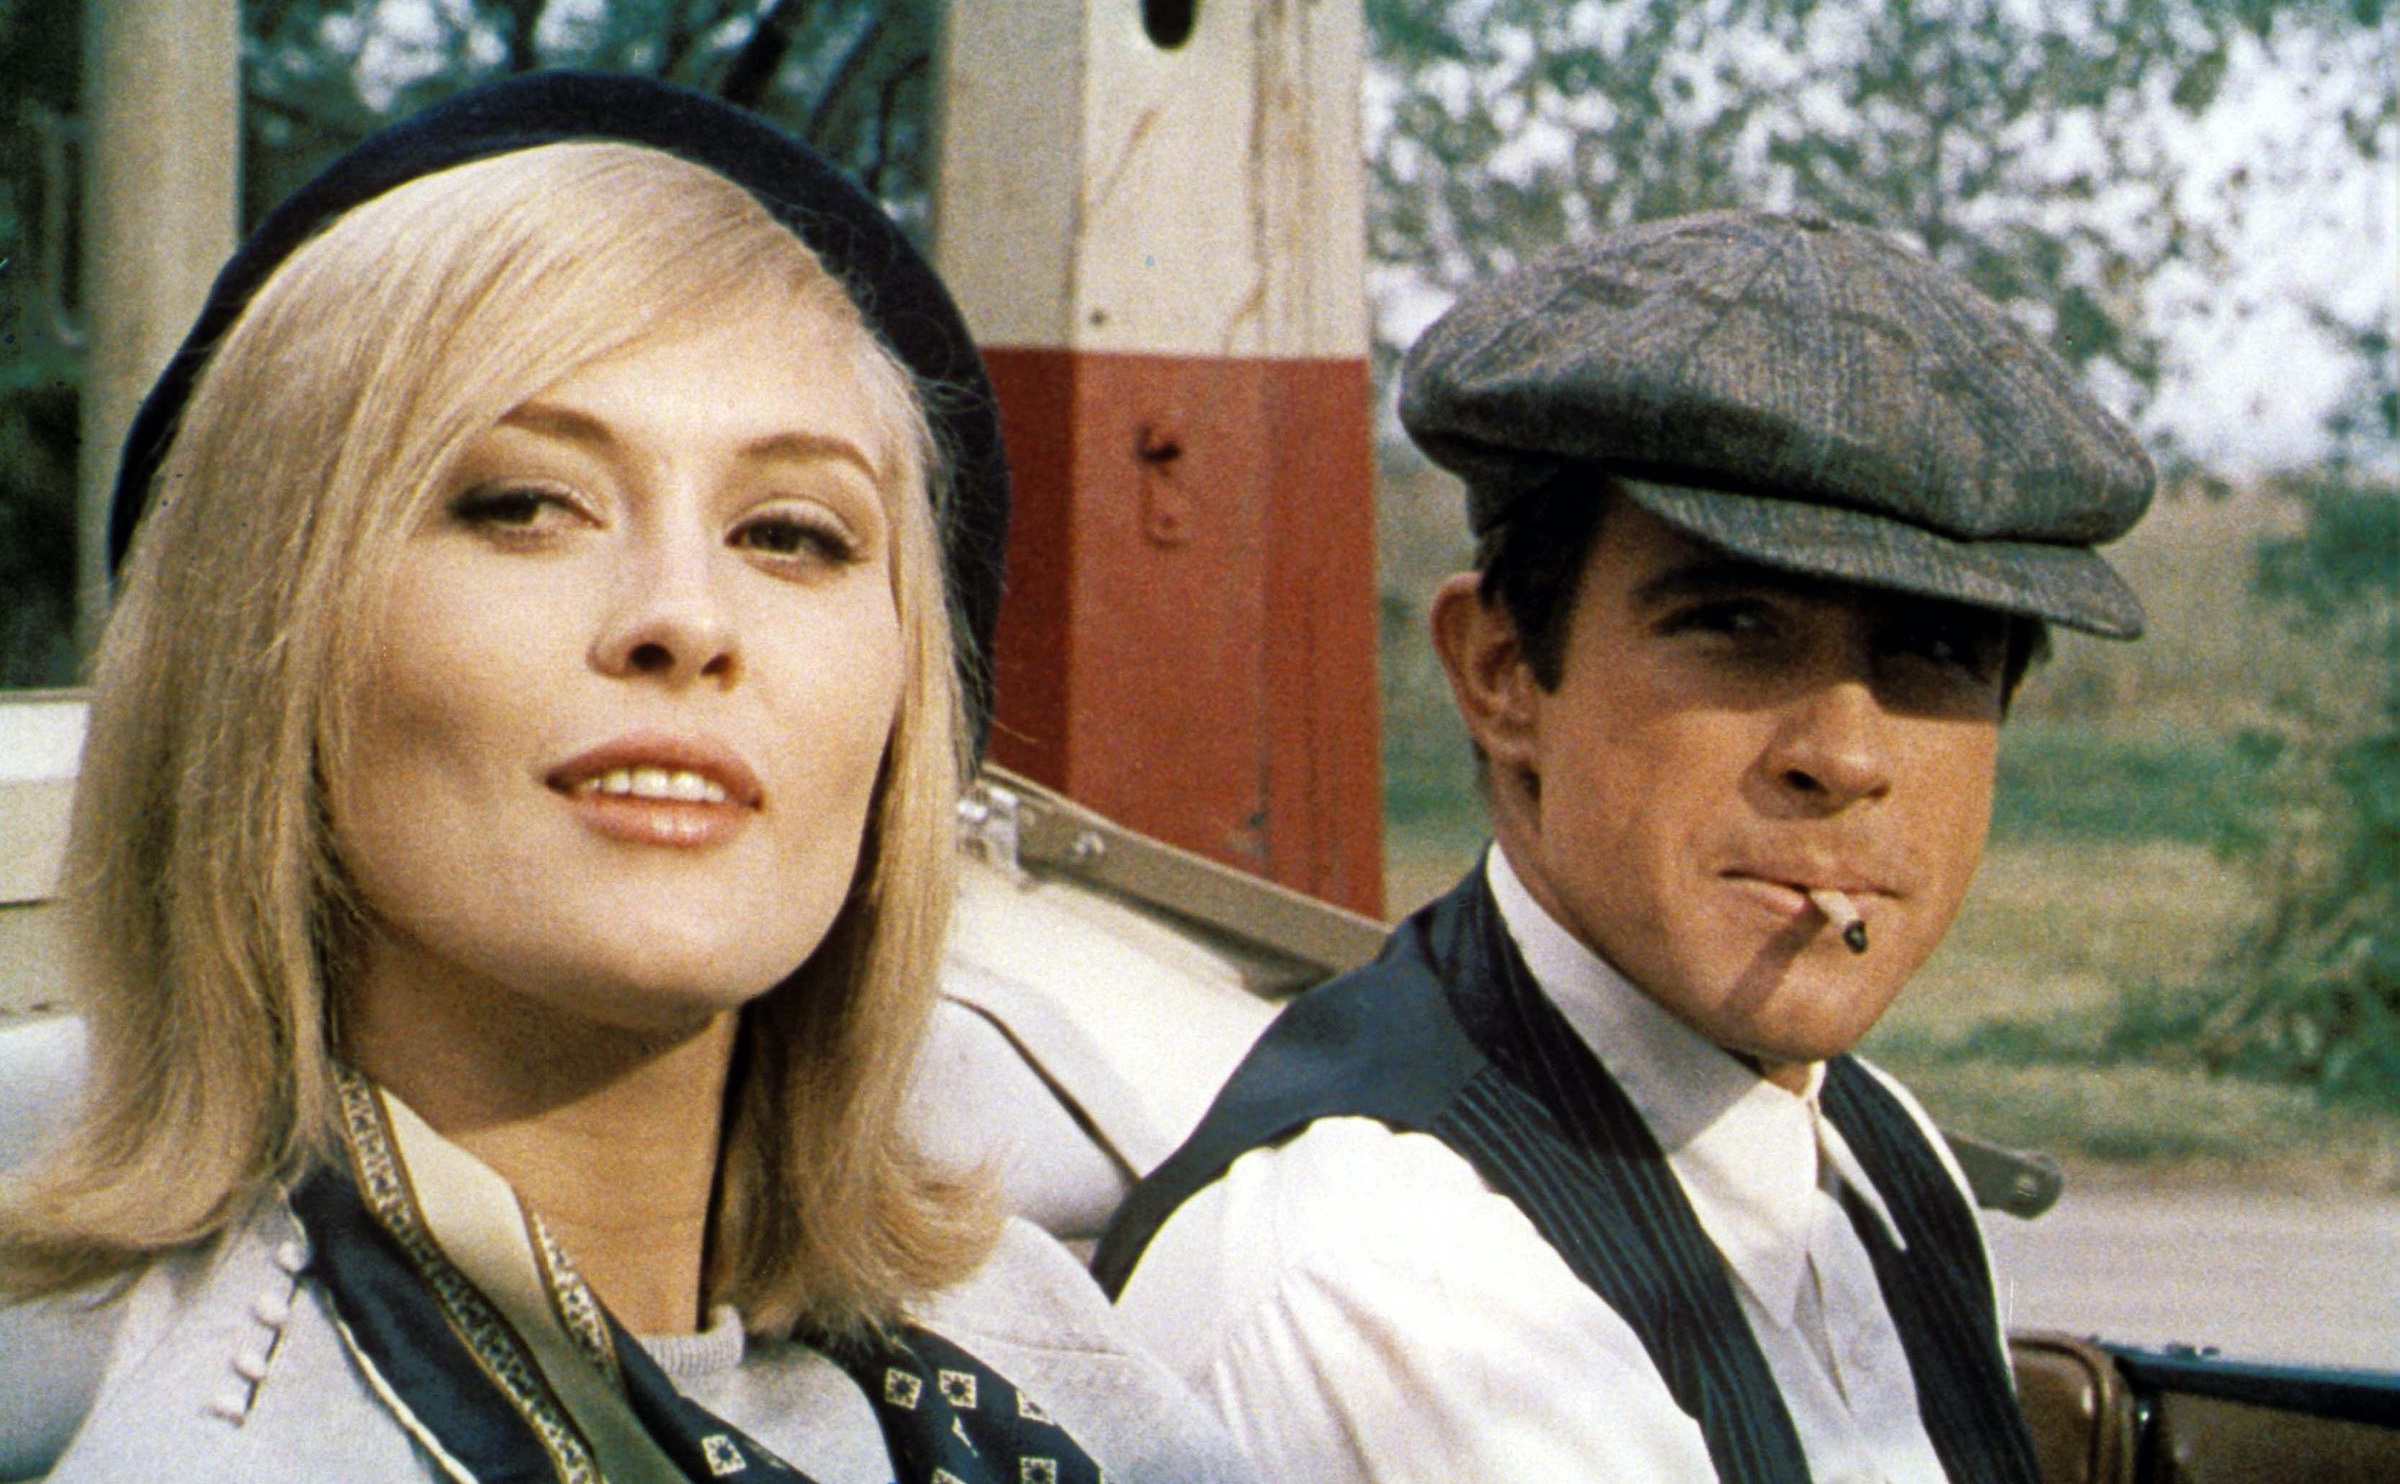 Bonnie and Clyde (1967) by Arthur Penn